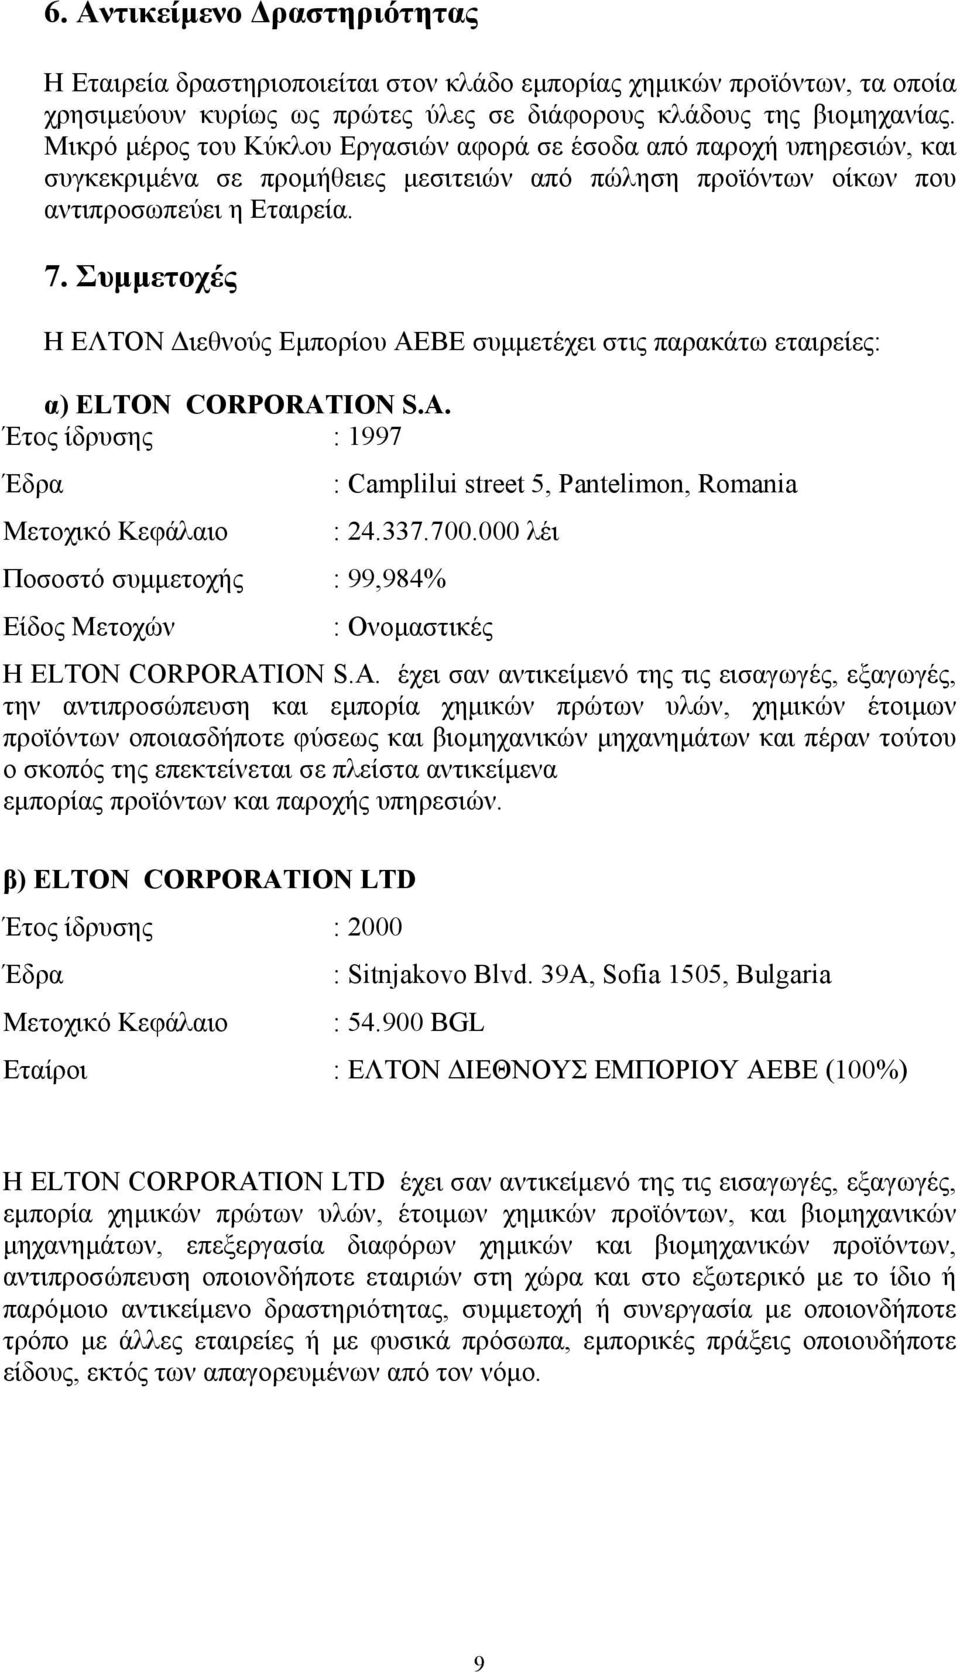 Συµµετοχές Η ΕΛΤΟΝ ιεθνούς Εµπορίου ΑΕΒΕ συµµετέχει στις παρακάτω εταιρείες: α) ELTON CORPORATION S.A. Έτος ίδρυσης : 1997 Έδρα : Camplilui street 5, Pantelimon, Romania Μετοχικό Κεφάλαιο : 24.337.